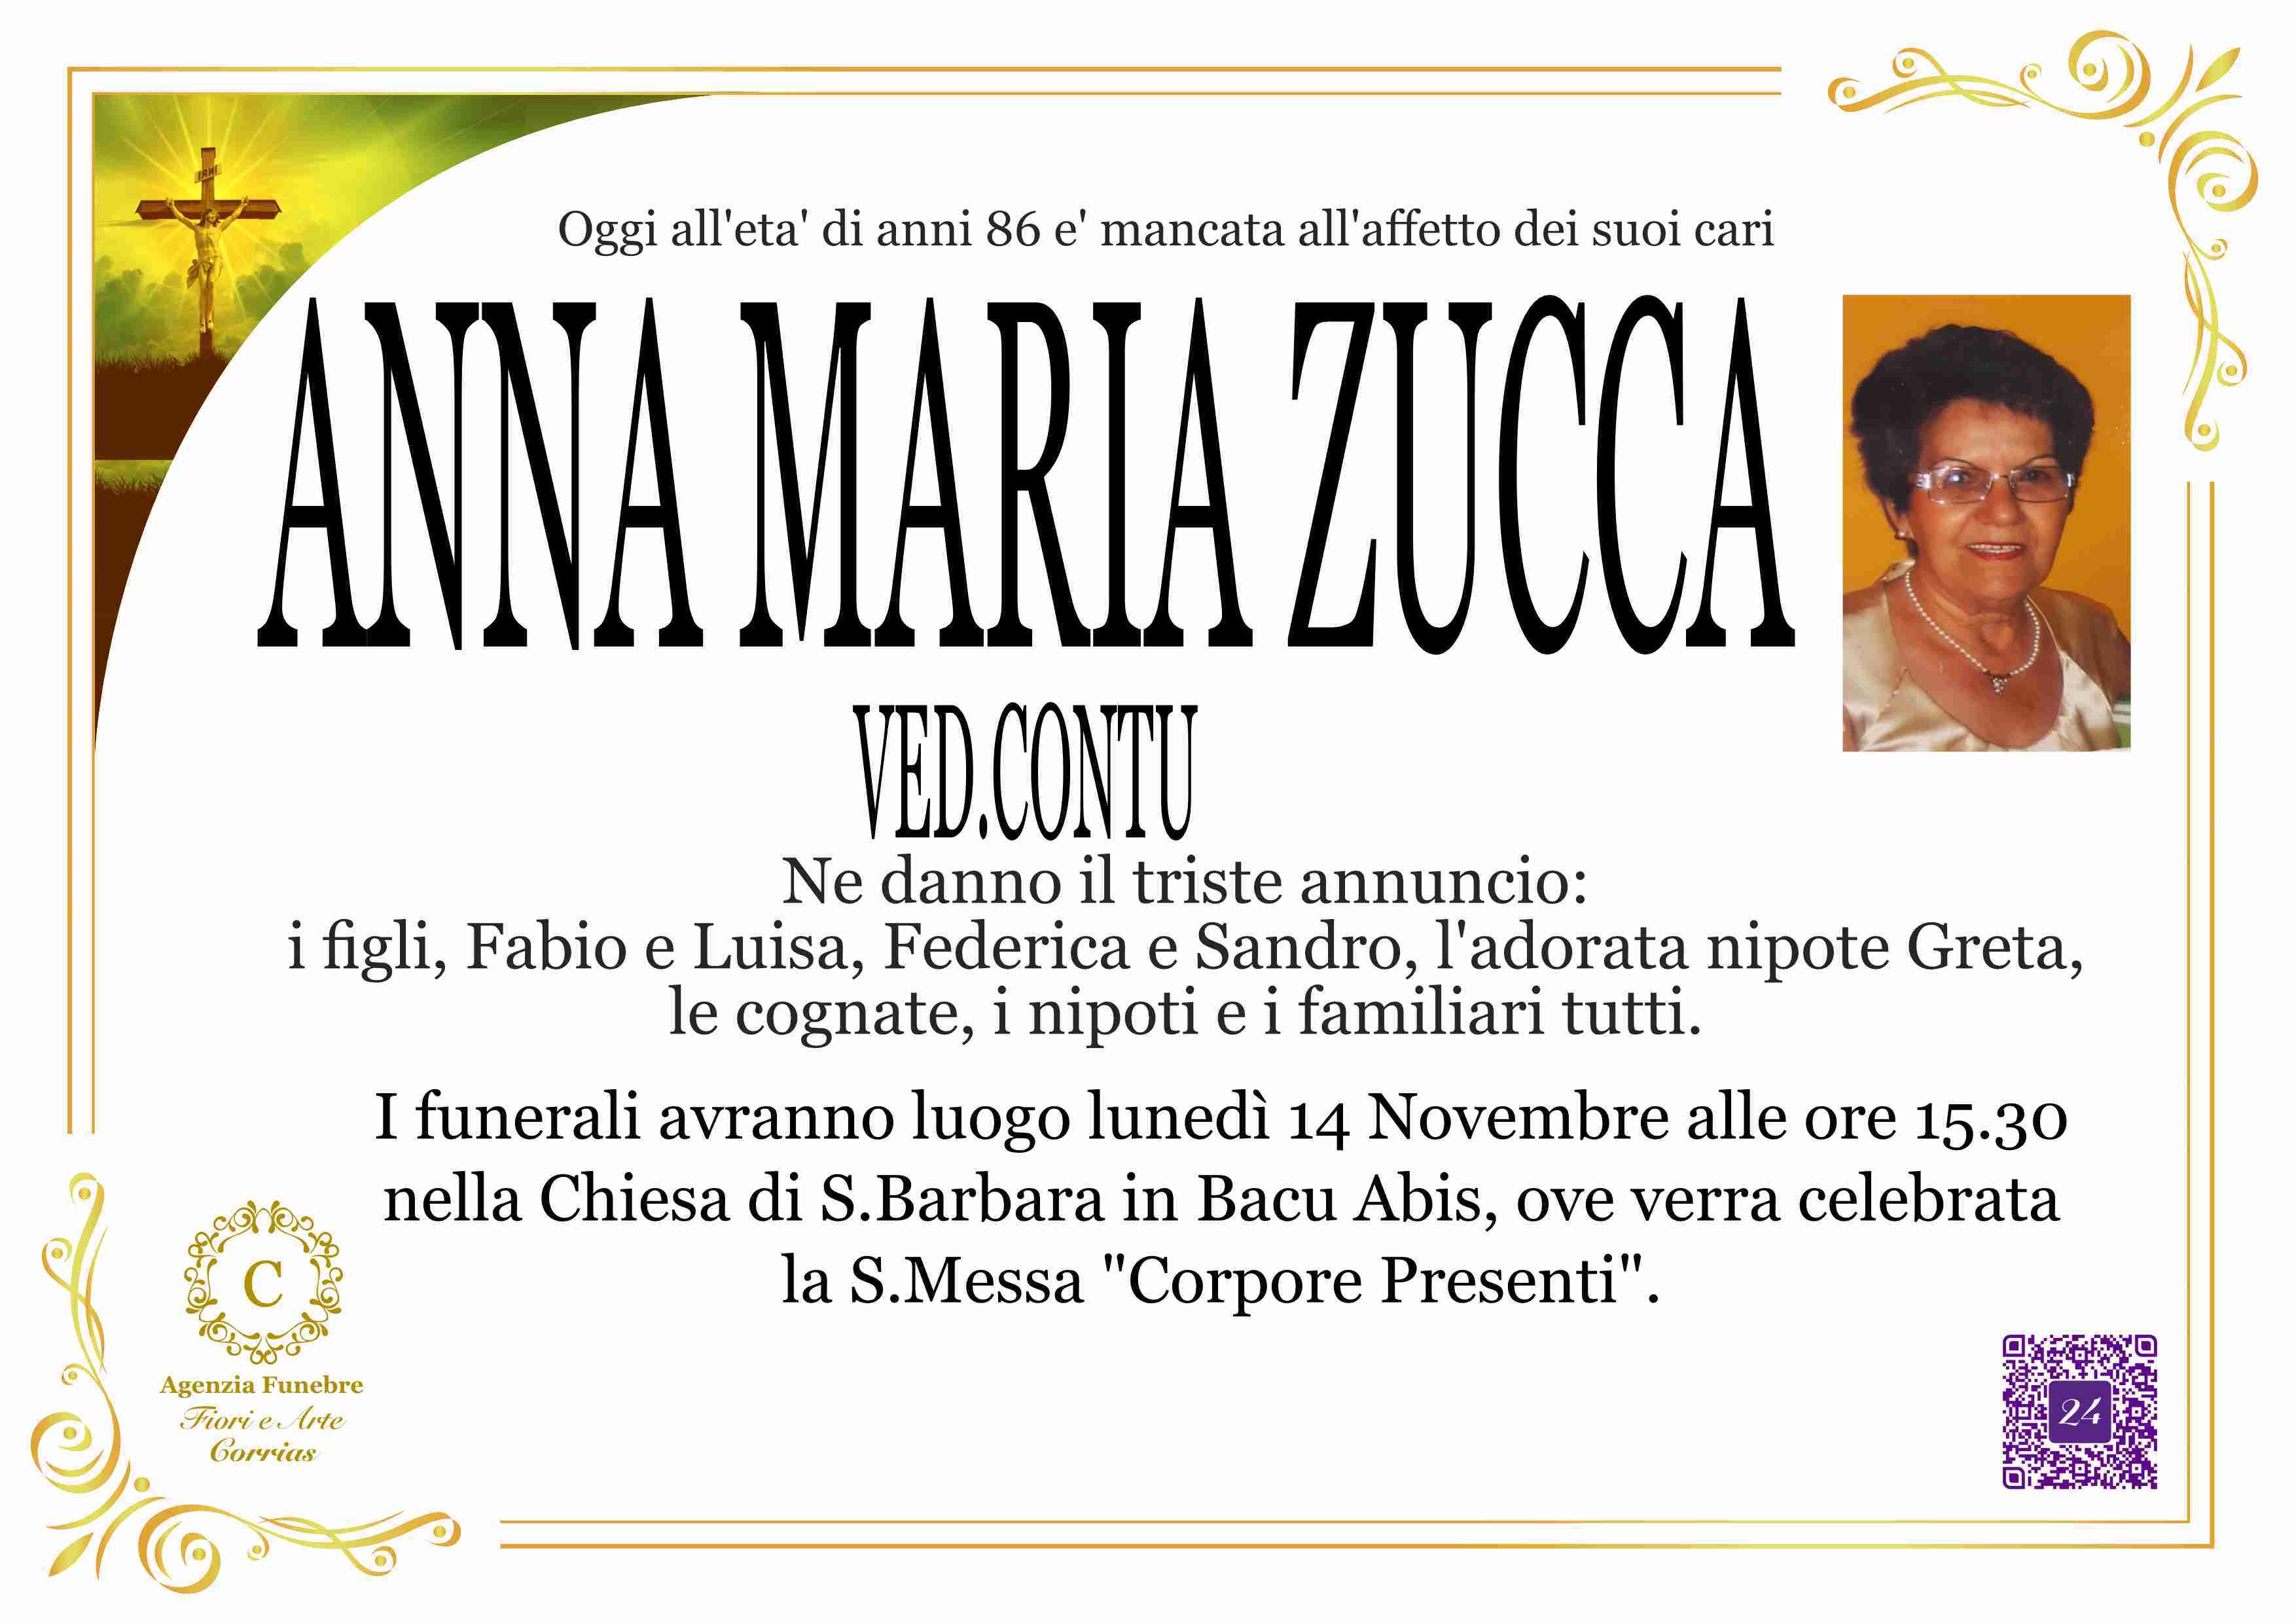 Anna Maria Zucca